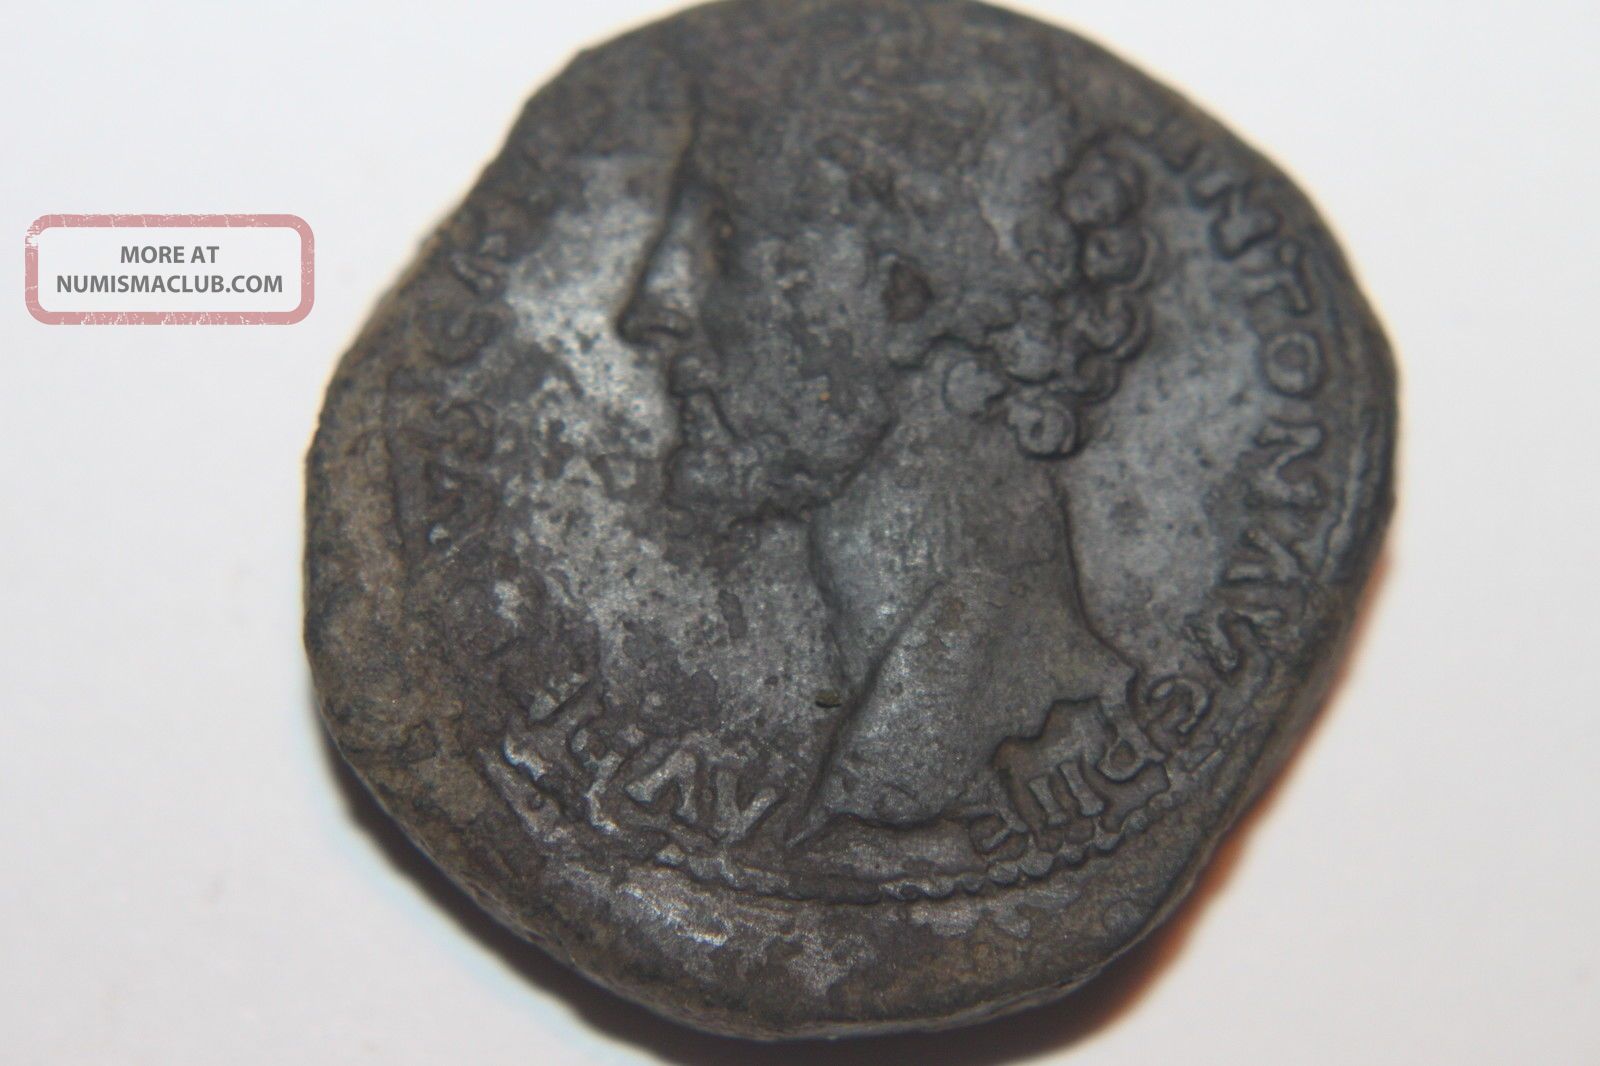 Ancient Roman Marcus Aurelius Sestertius Coin 2nd Century Ad